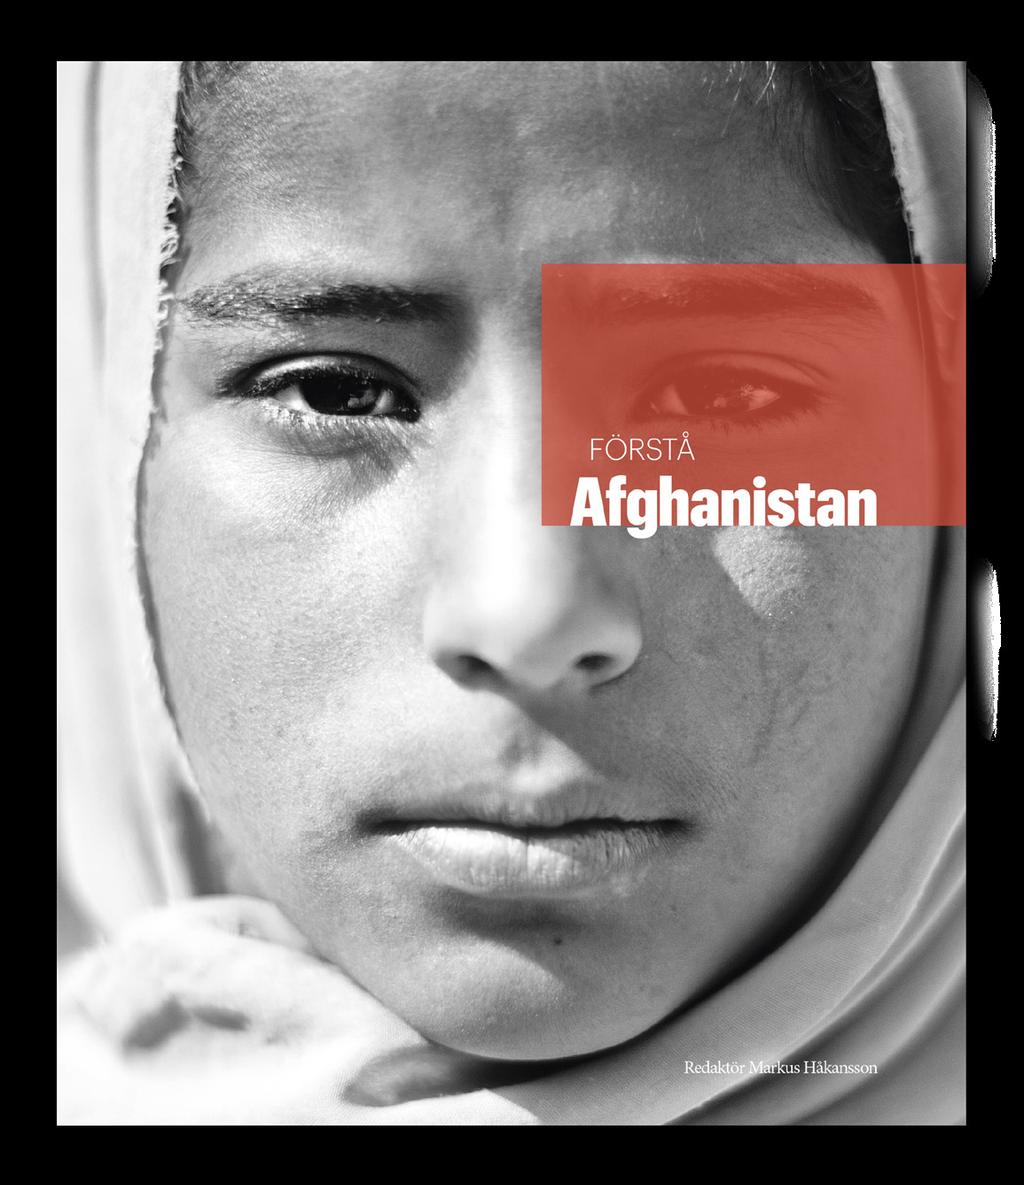 MED DIN HJÄLP KAN VI NÅ LIVSAVGÖRANDE FÖRÄNDRING FÖR DE MEST UTSATTA I AFGHANISTAN. Köp boken Förstå Afghanistan på www.sak.se/boken VAR MED OCH FÖRÄNDRA! Stöd oss nu.